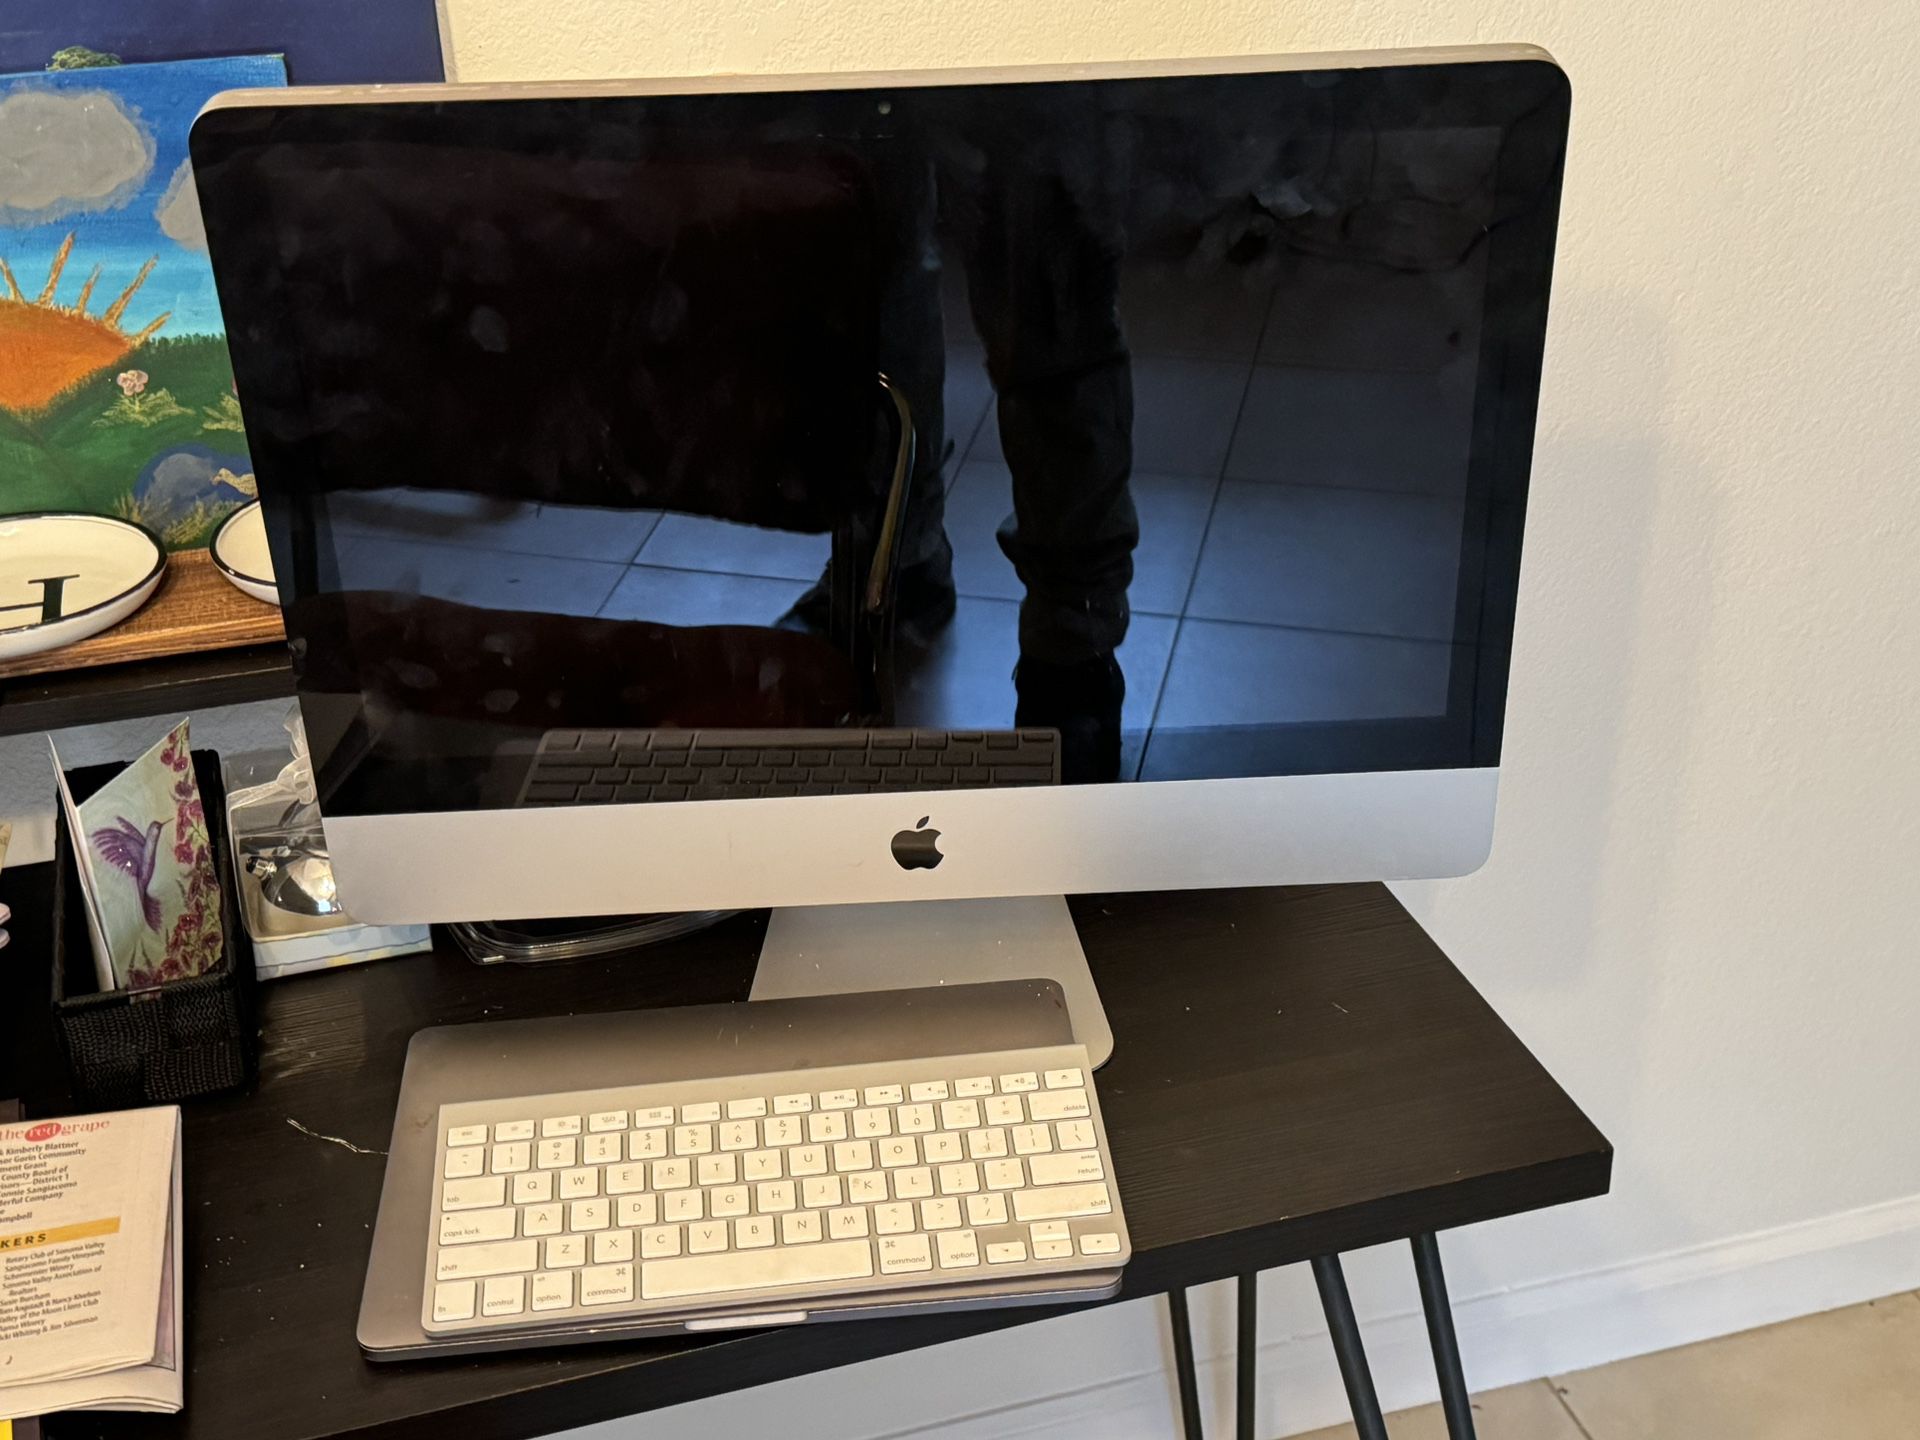 Mac Computer